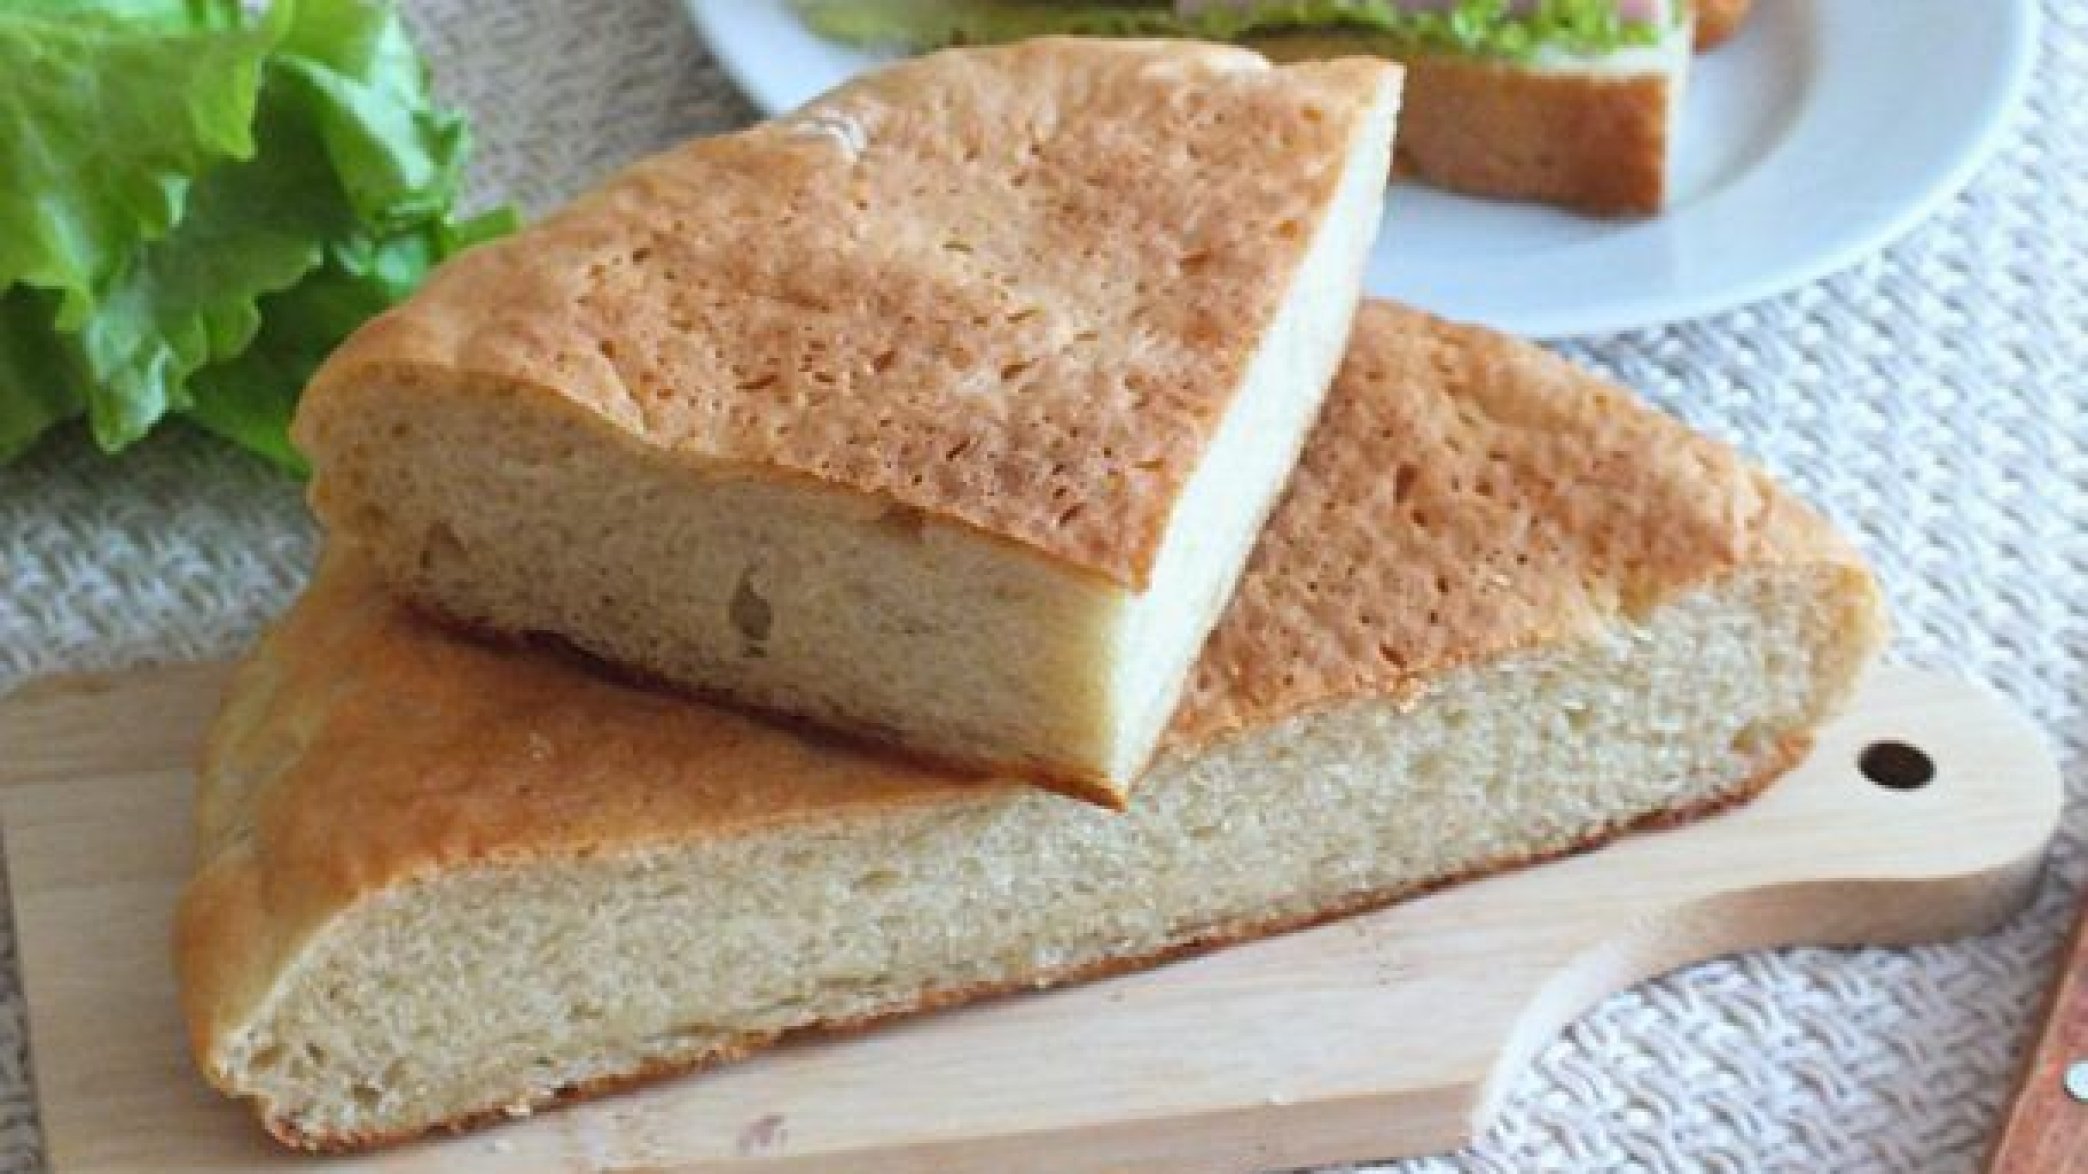 Не только хлебопечка: в чем испечь хлеб?